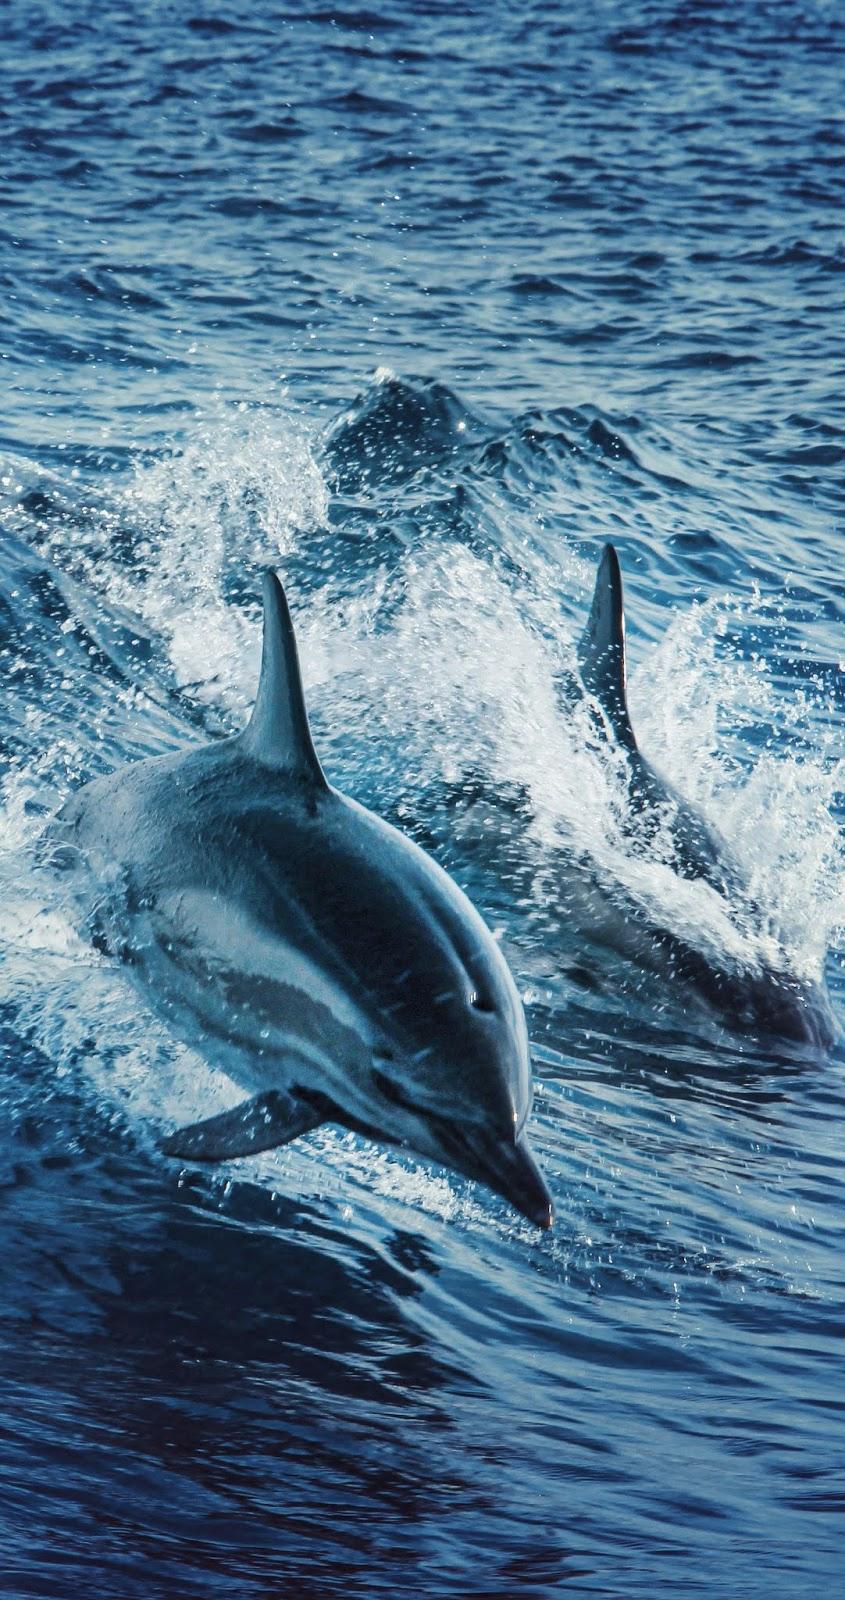  Delfine Hintergrundbild 845x1600. About Wild Animals: Amazing dolphins swimming. Marine animals, Animals wild, Dolphins